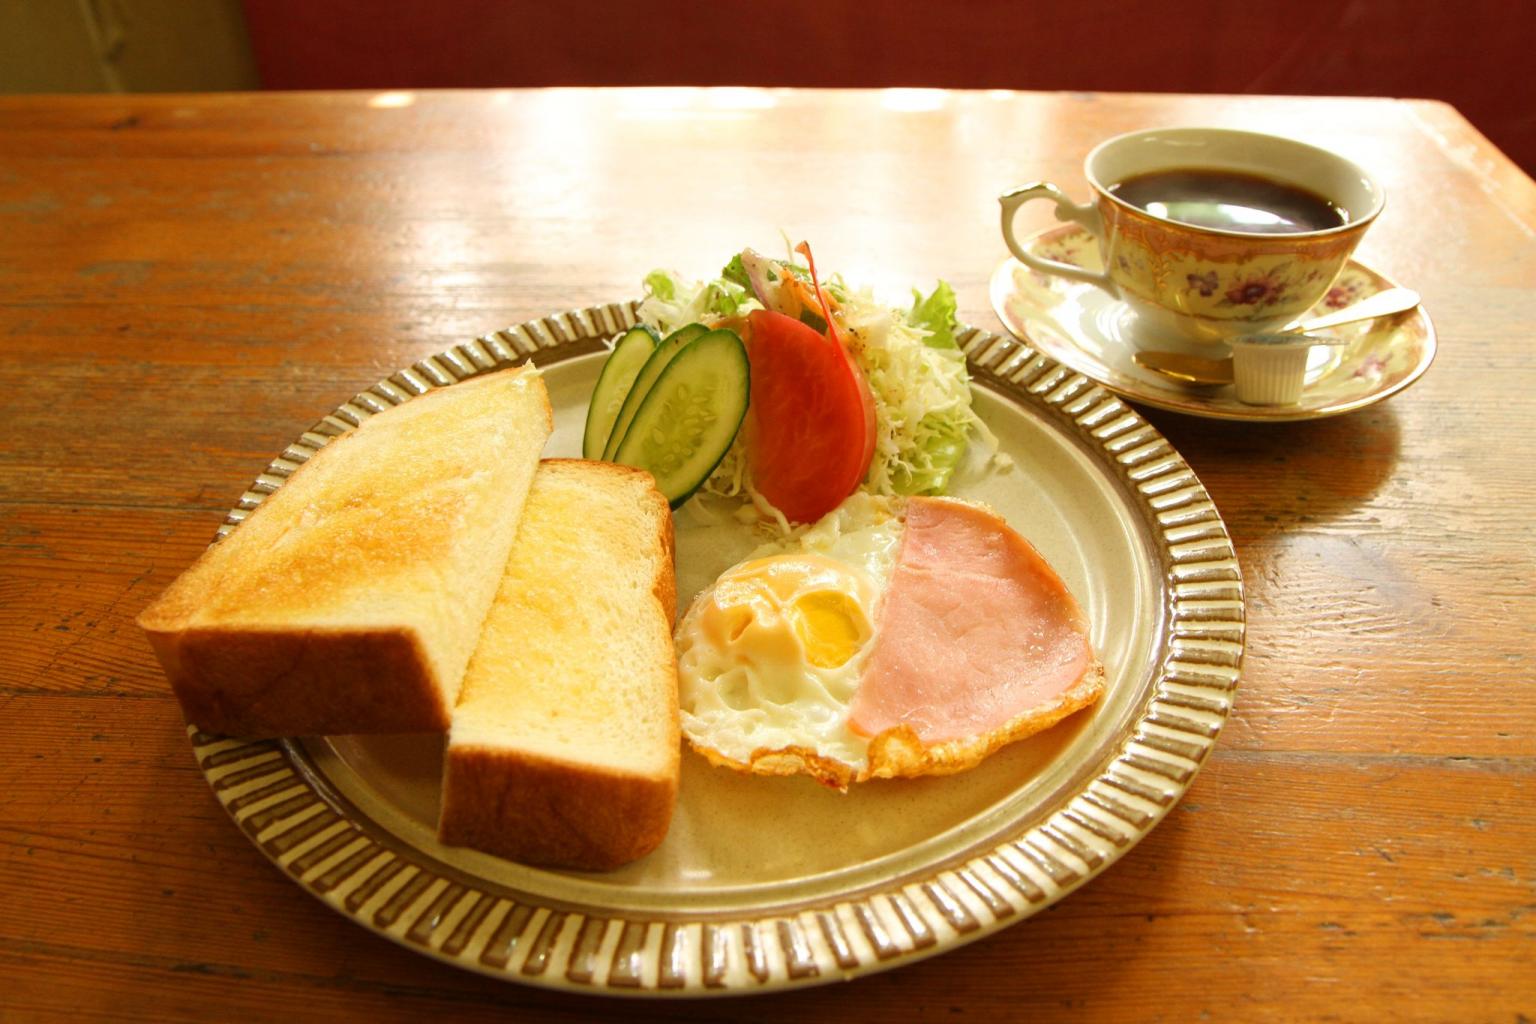 モーニングが楽しめる喫茶店3選 公式 熊本県観光サイト もっと もーっと くまもっと